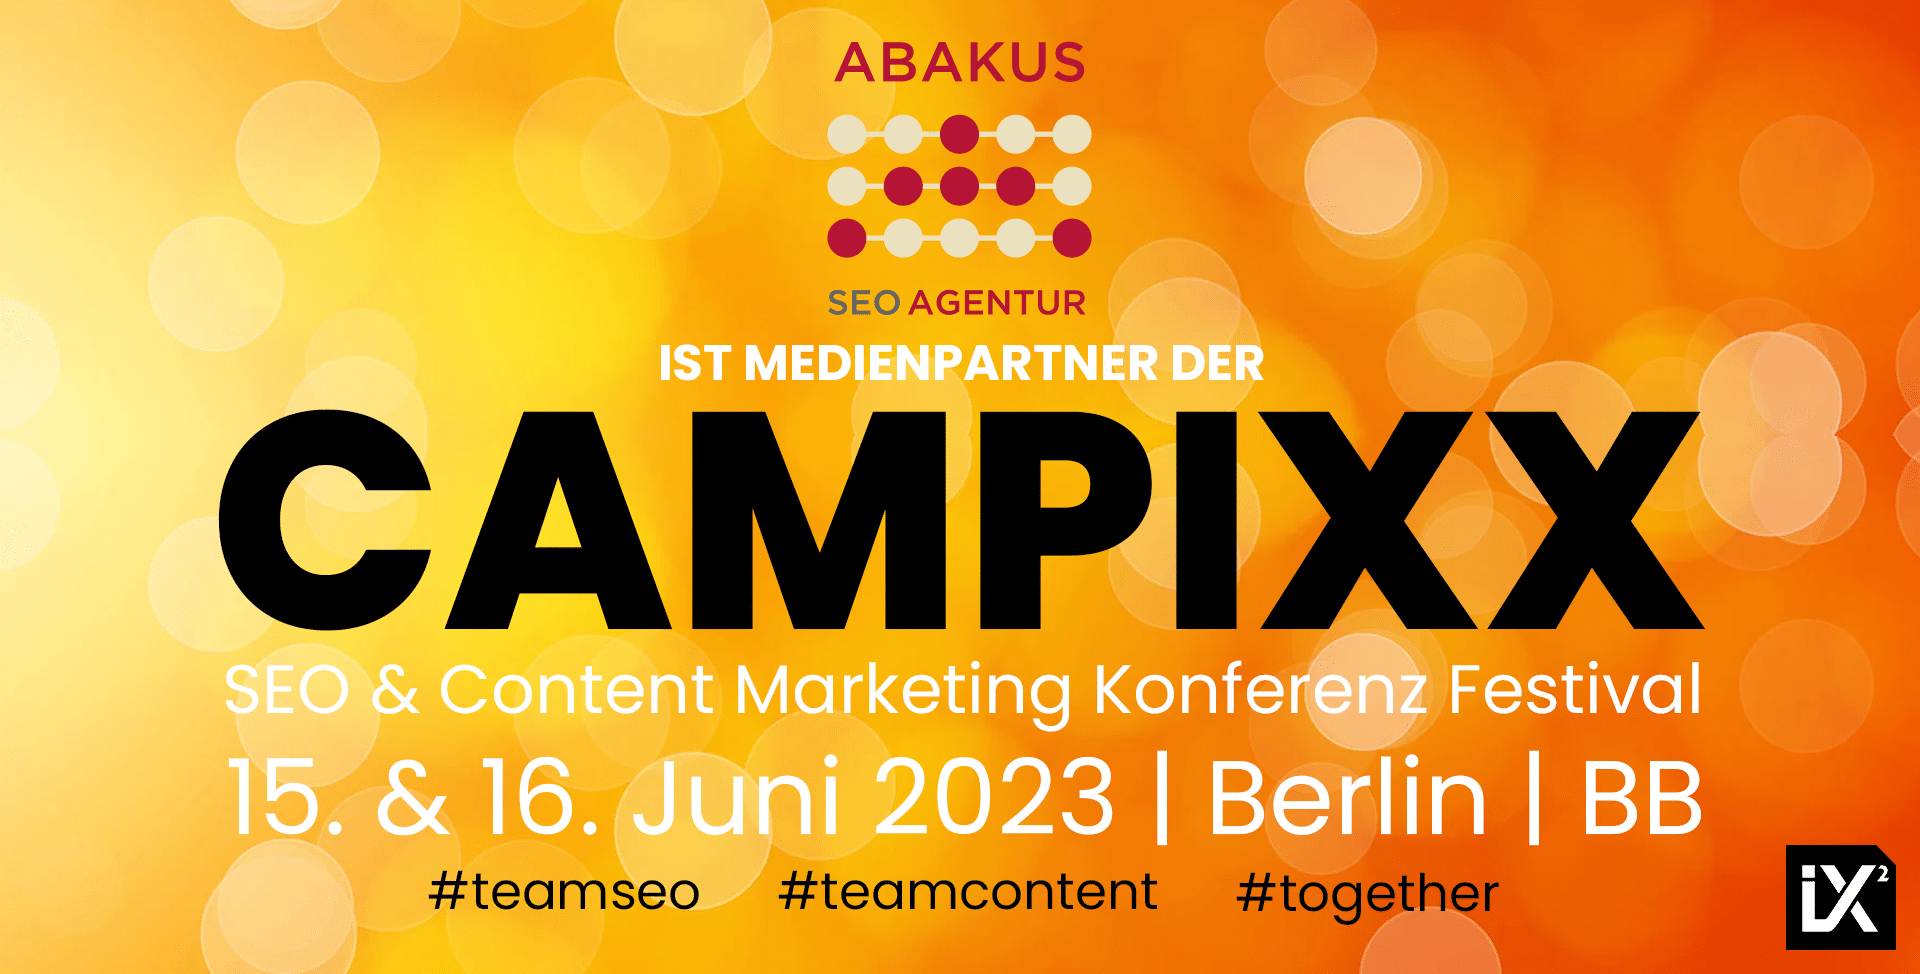 Die CAMPIXX 2023 vom 15. bis 16. Juni: Wissensvermittlung und Networking zu SEO und Contentmarketing in Berlin Brandenburg